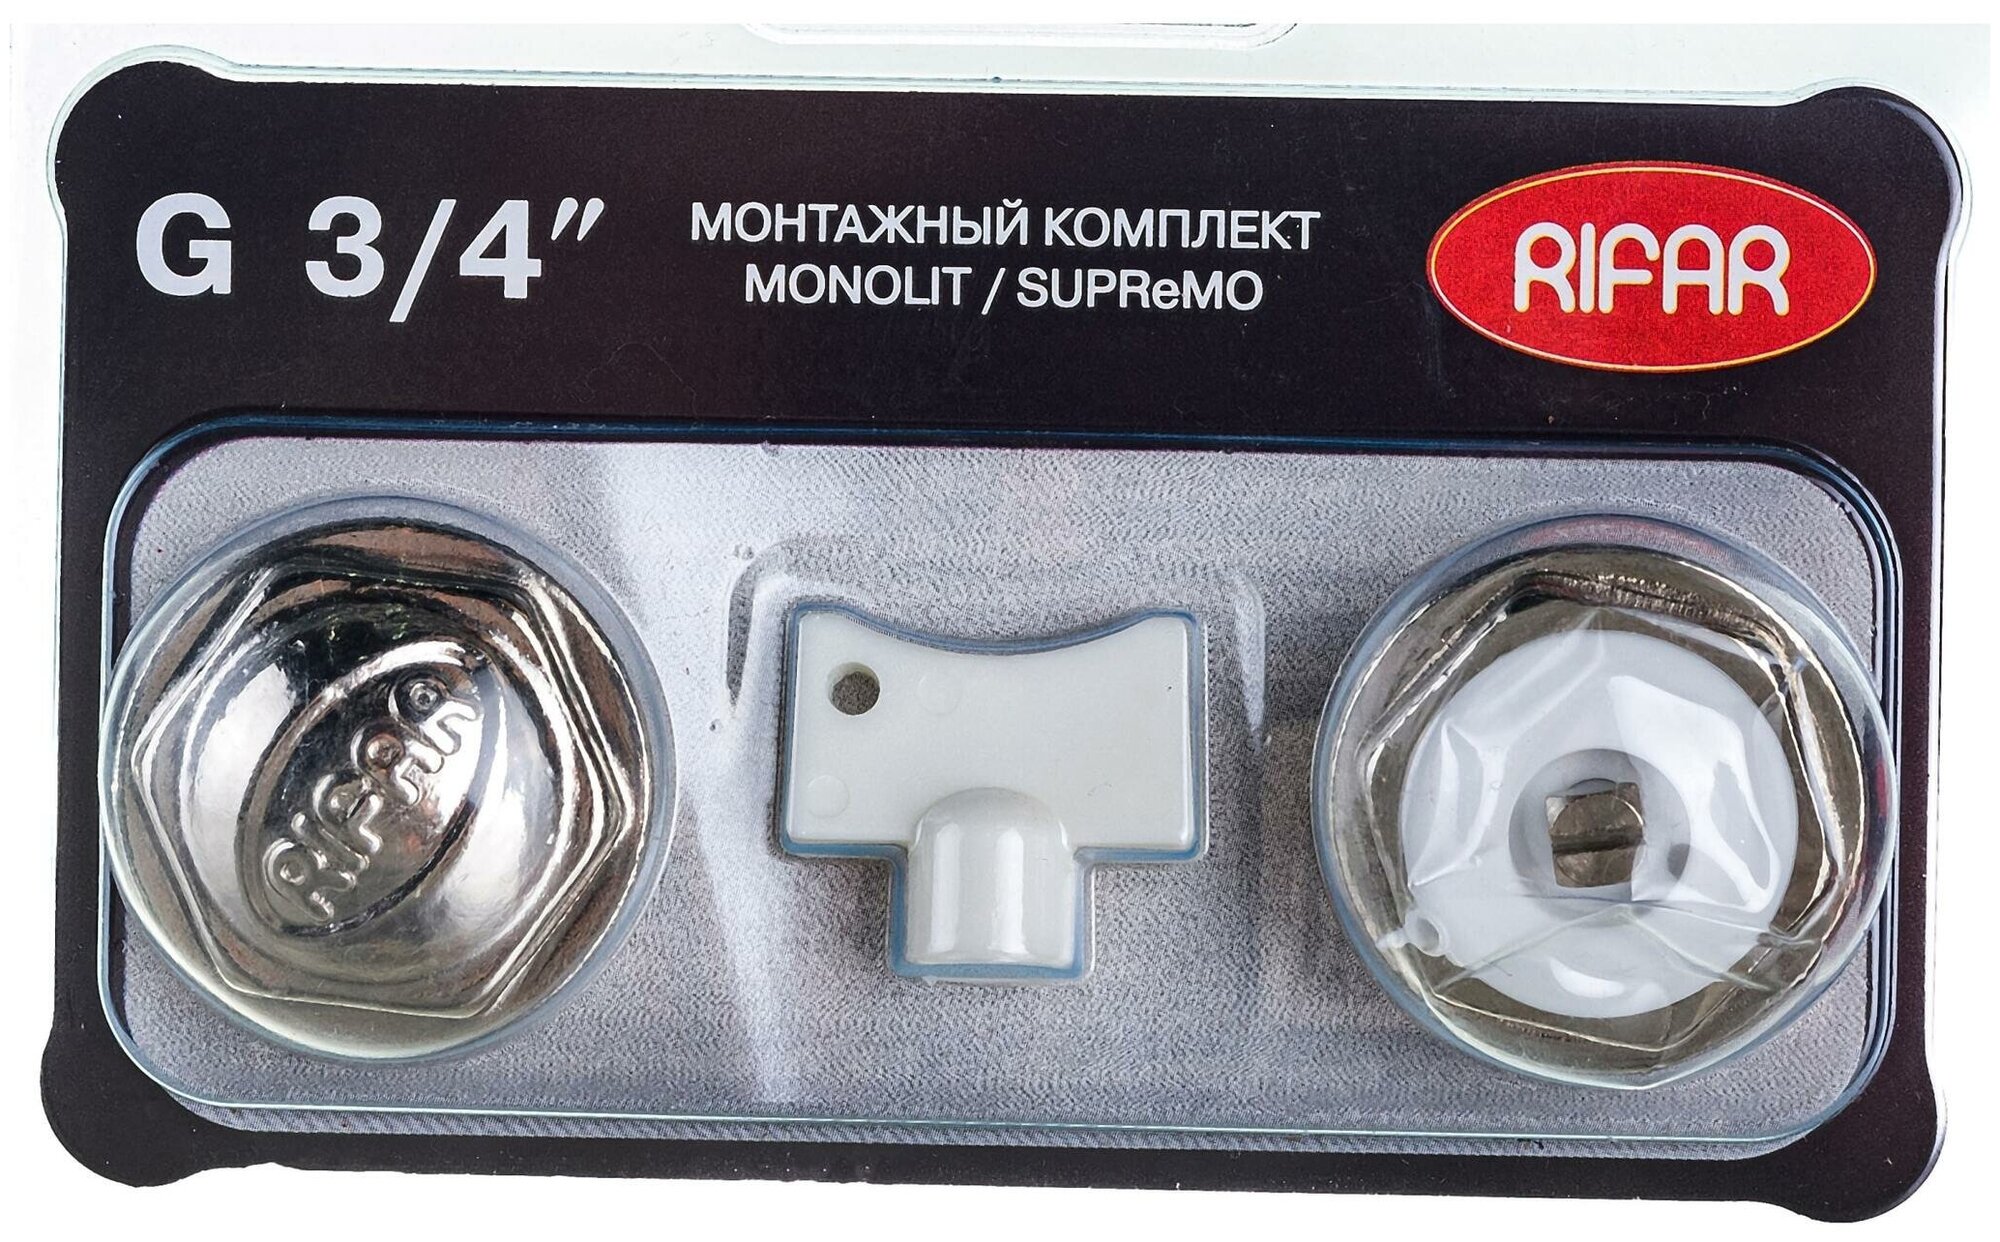 RIFAR Комплект для подключения радиатора MONOLIT/SUPReMO 3/4 R. Ad. G34MS